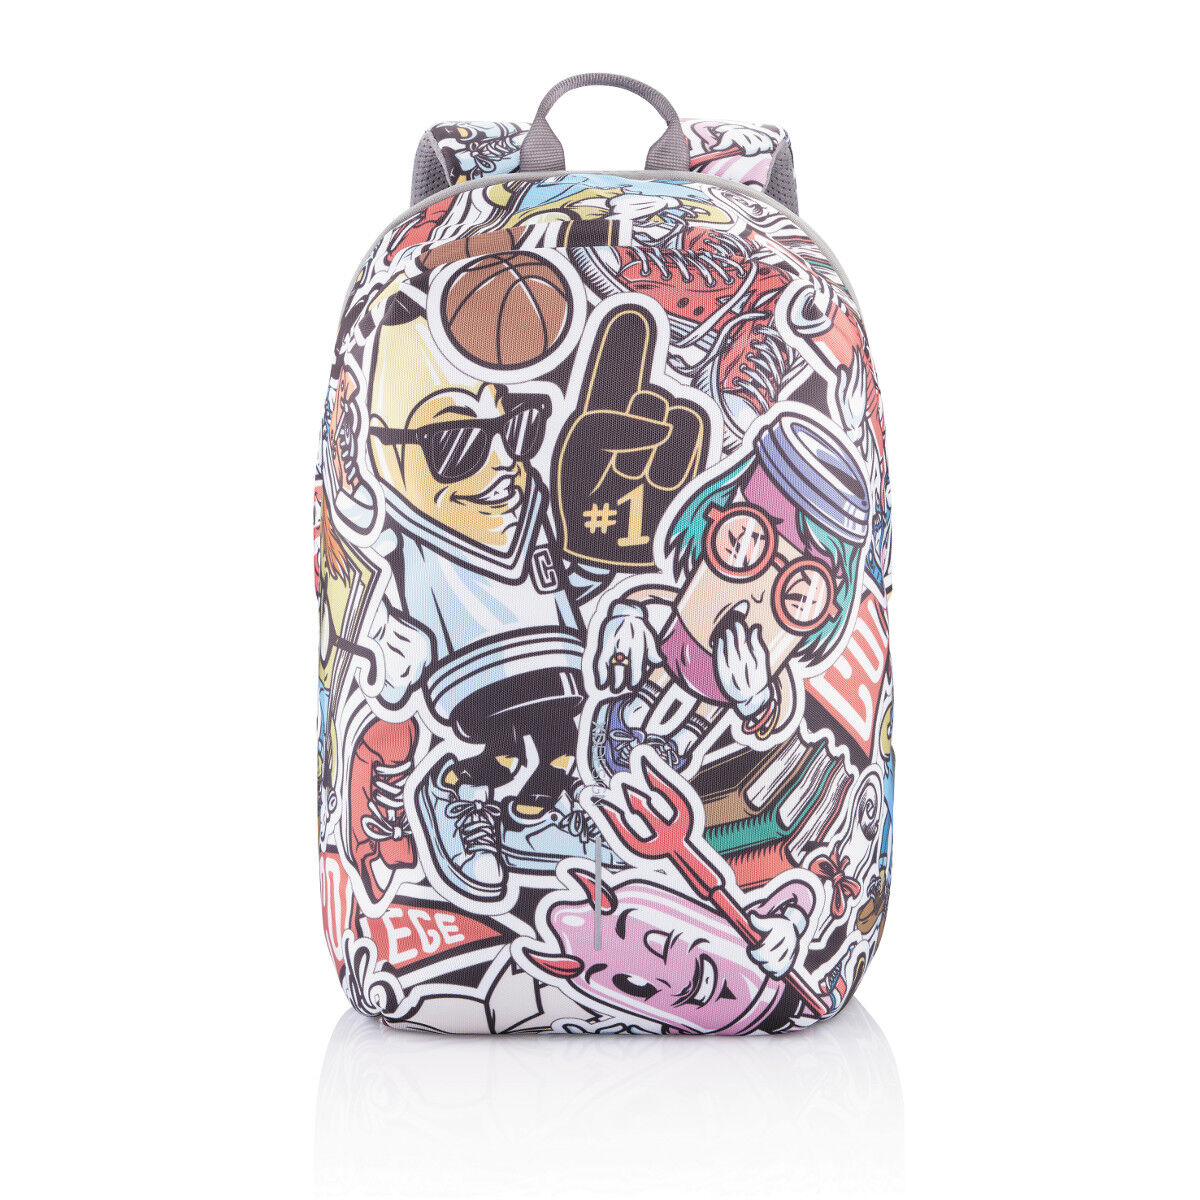 Bobby Soft ART anti-theft backpack (Graffiti Pattern)